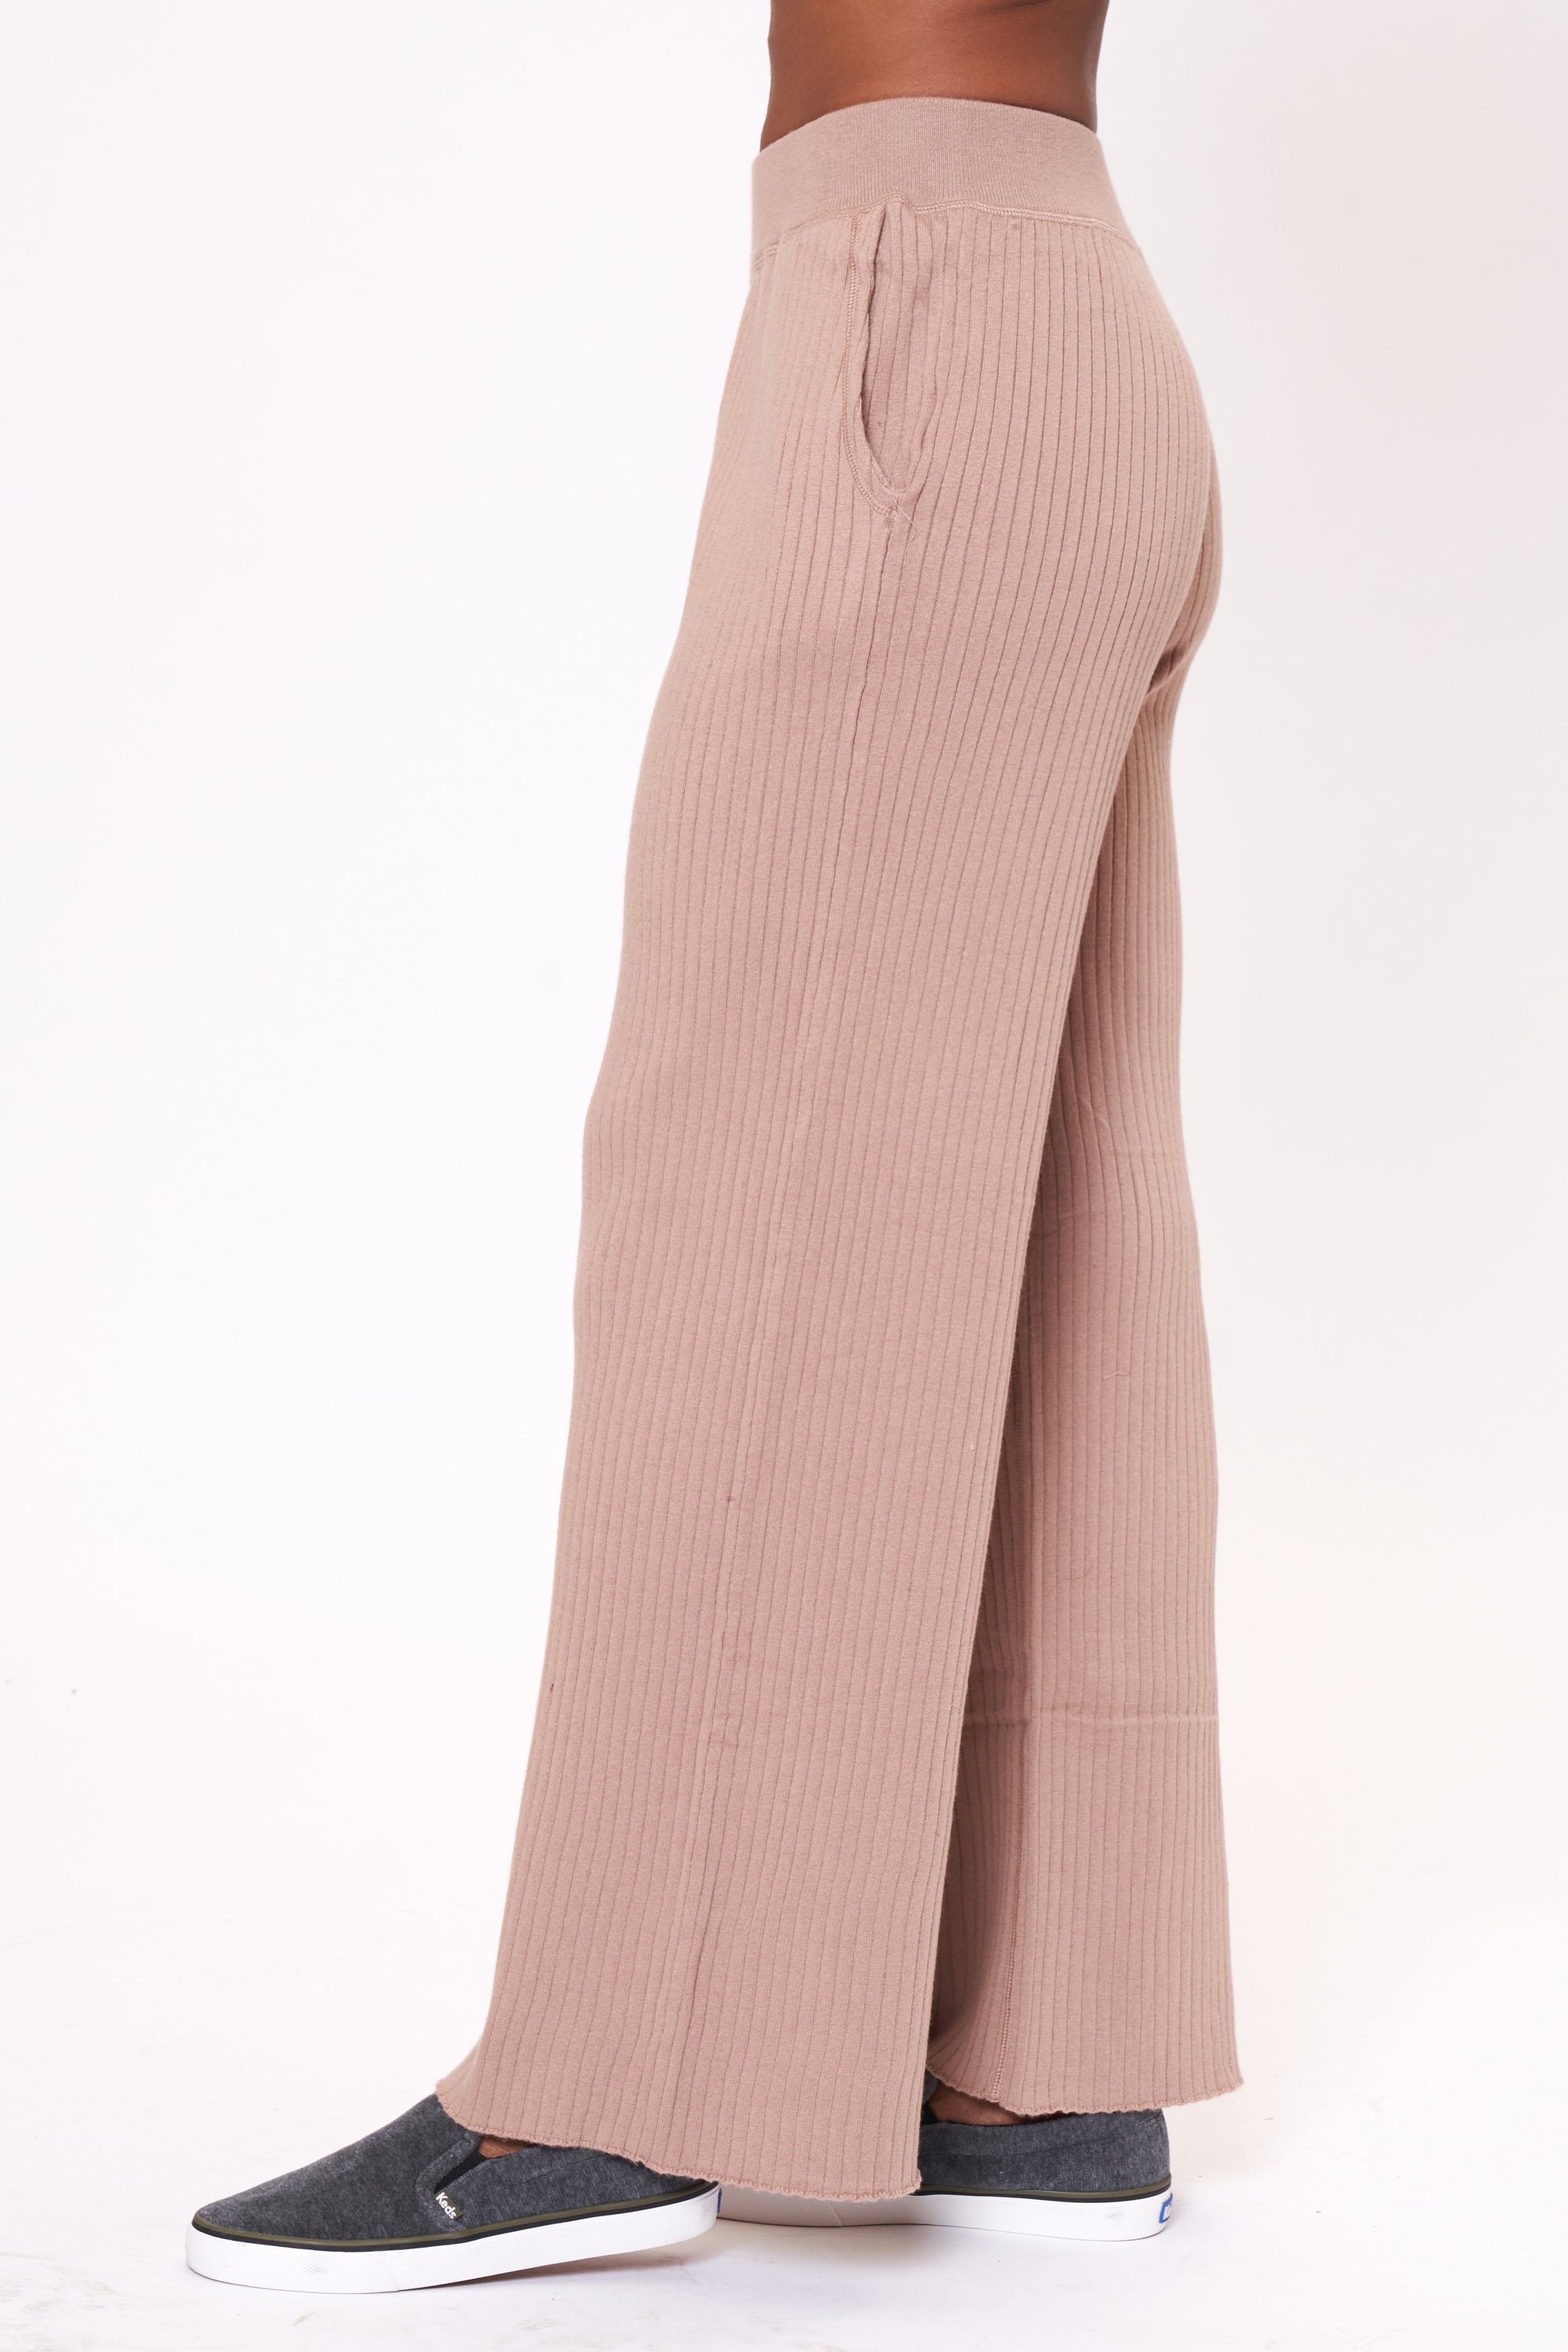 Women's Prettylittlething Pink Stripe Pant PJ Set - Size 0